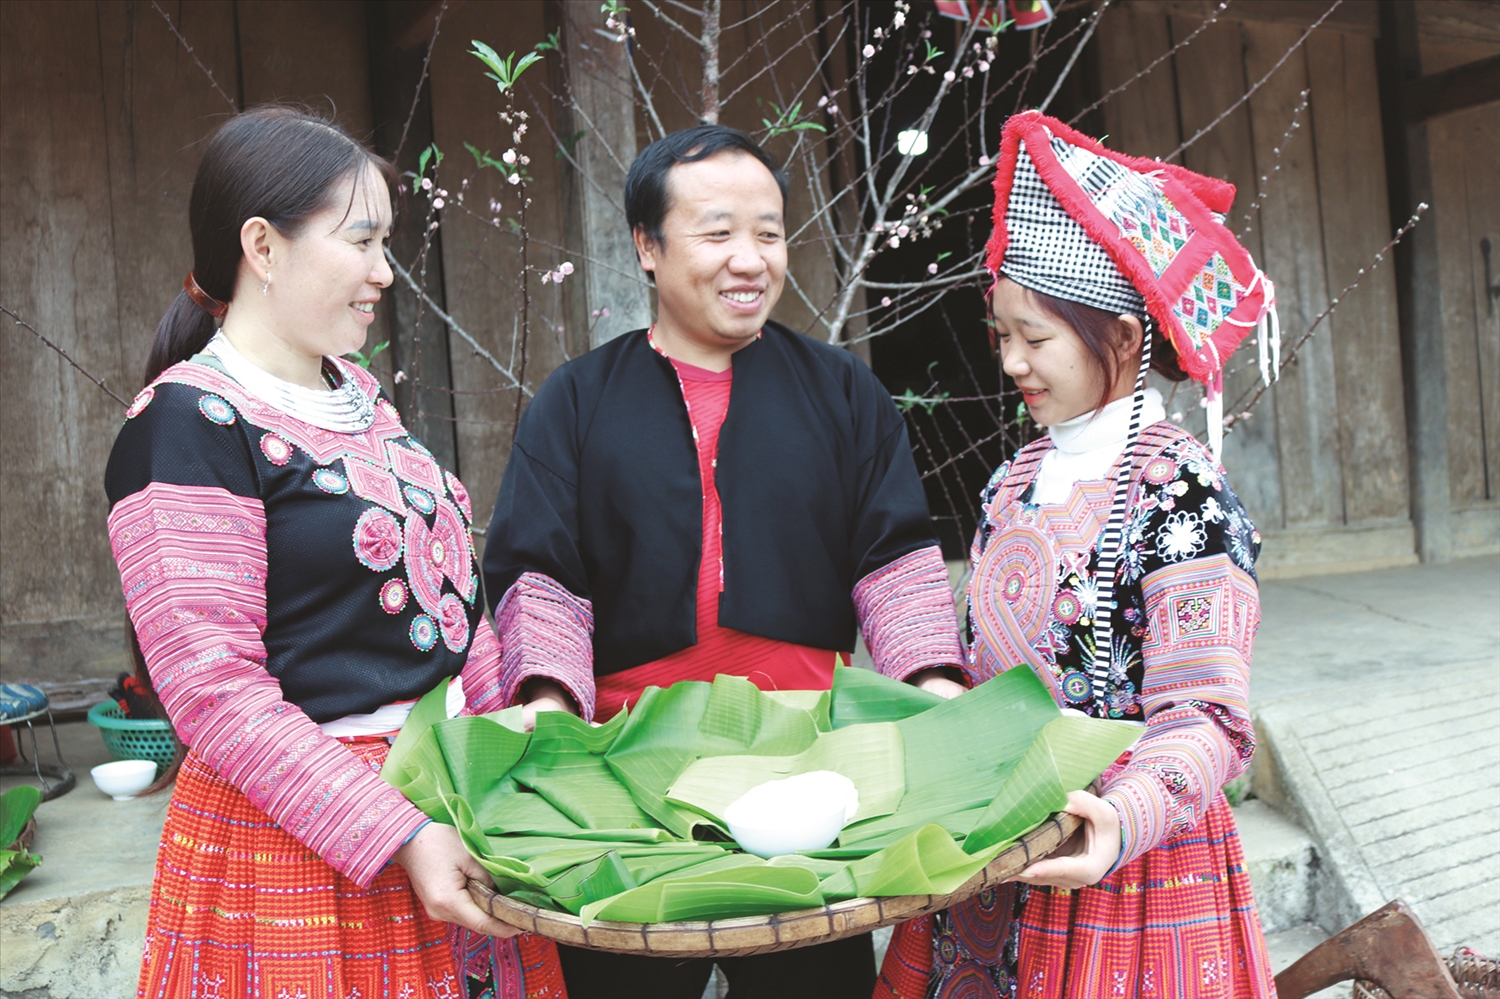 Bánh giầy là món bánh truyền thống không thể thiếu trong mâm cỗ đãi khách ngày Tết của đồng bào Mông